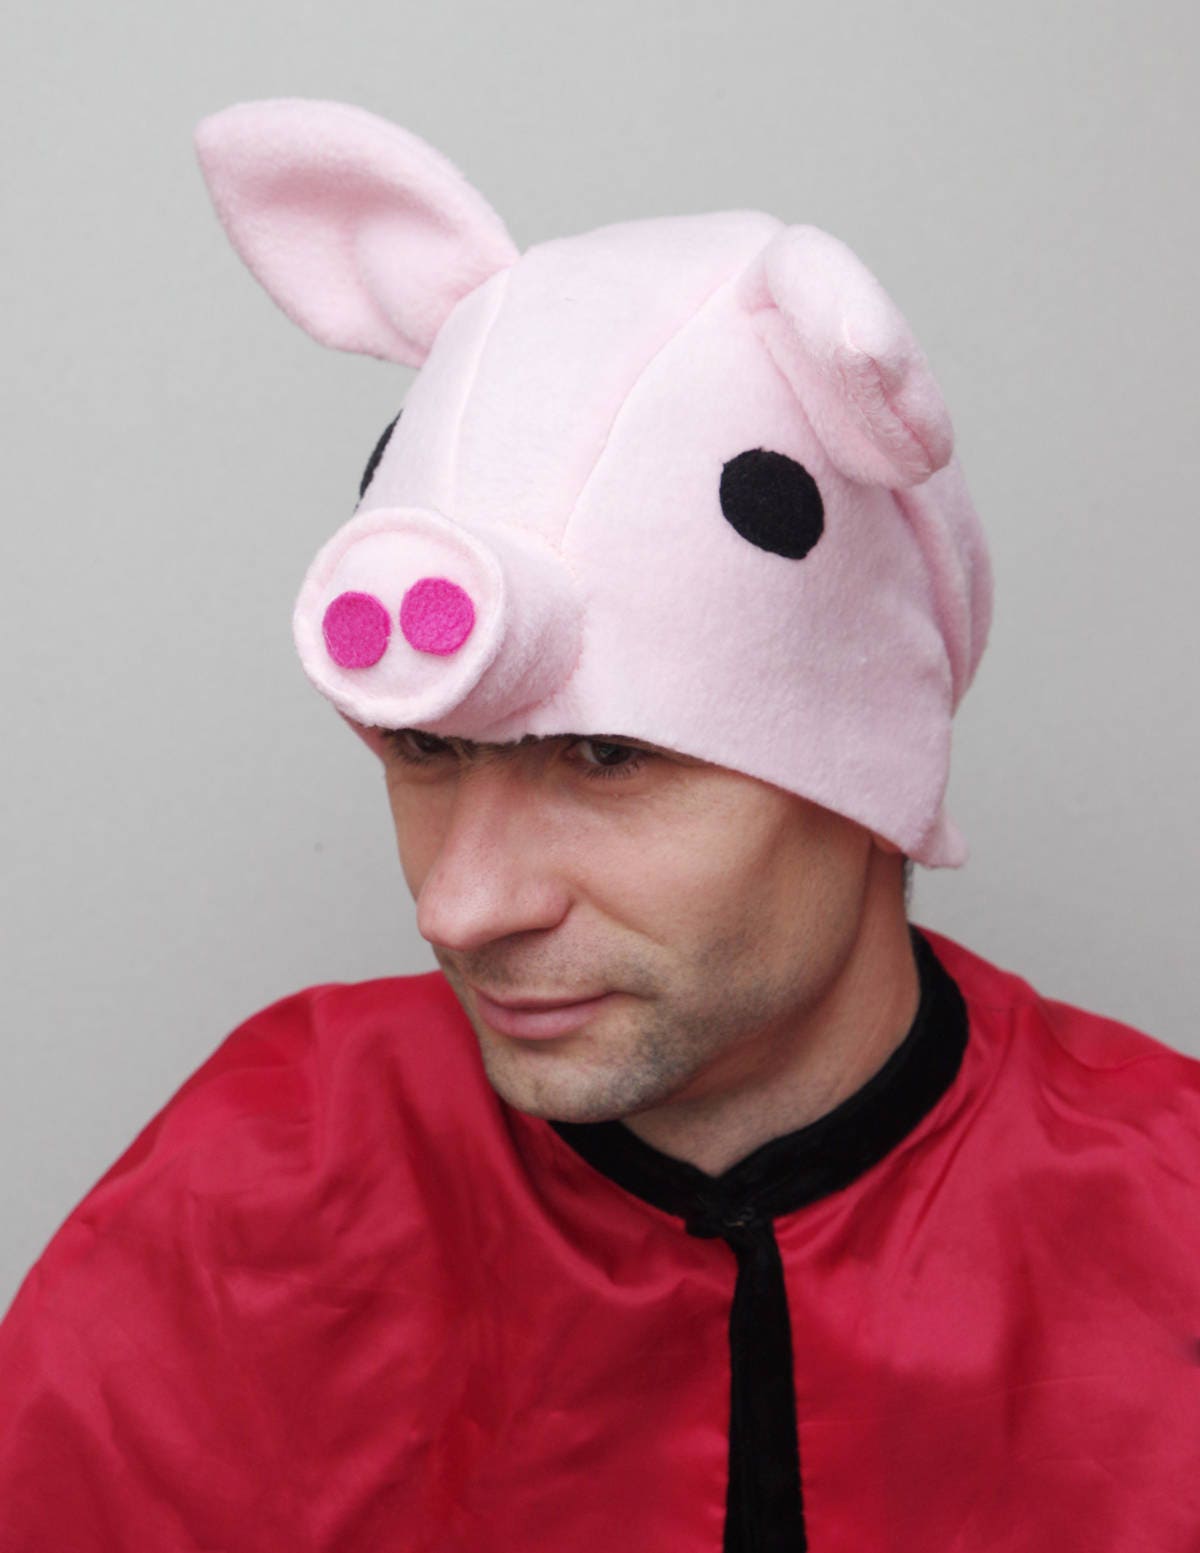 Adult pig costume hat for Halloween Pink Pig mask for Men or | Etsy